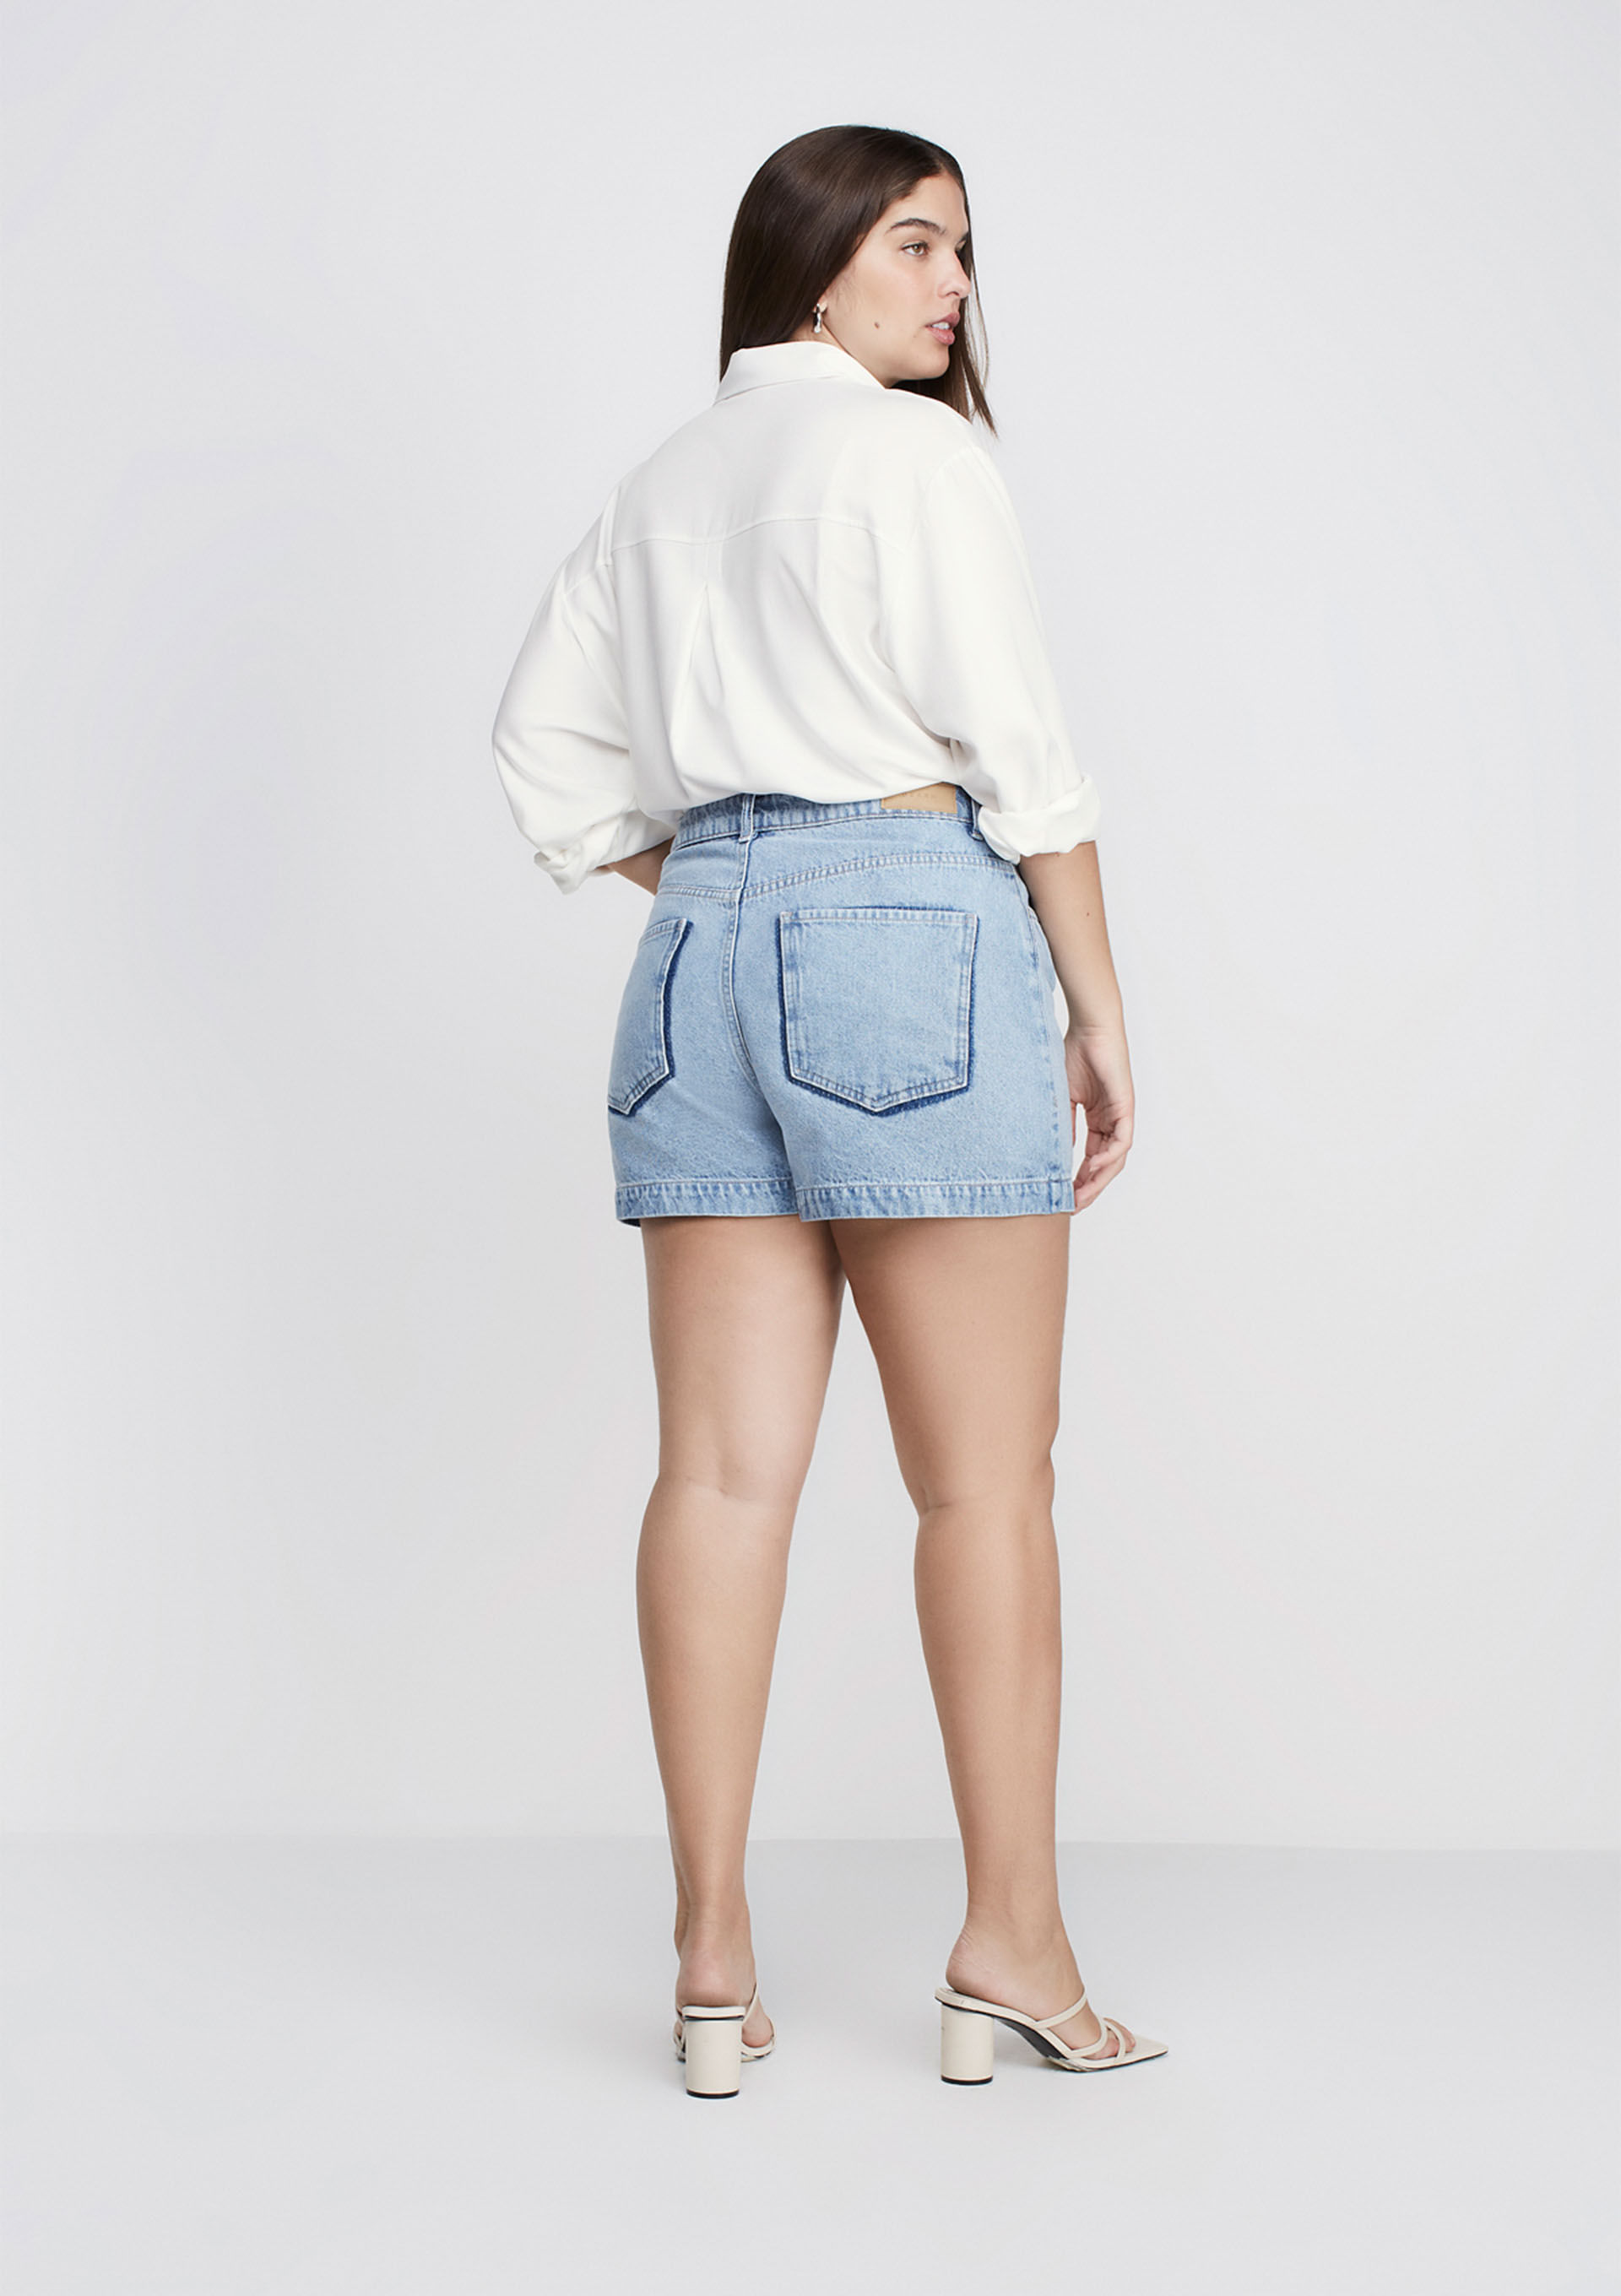 93721 - short jeans curto cintura alta - 93721 - short jeans curto cintura  alta online - ON-LINE